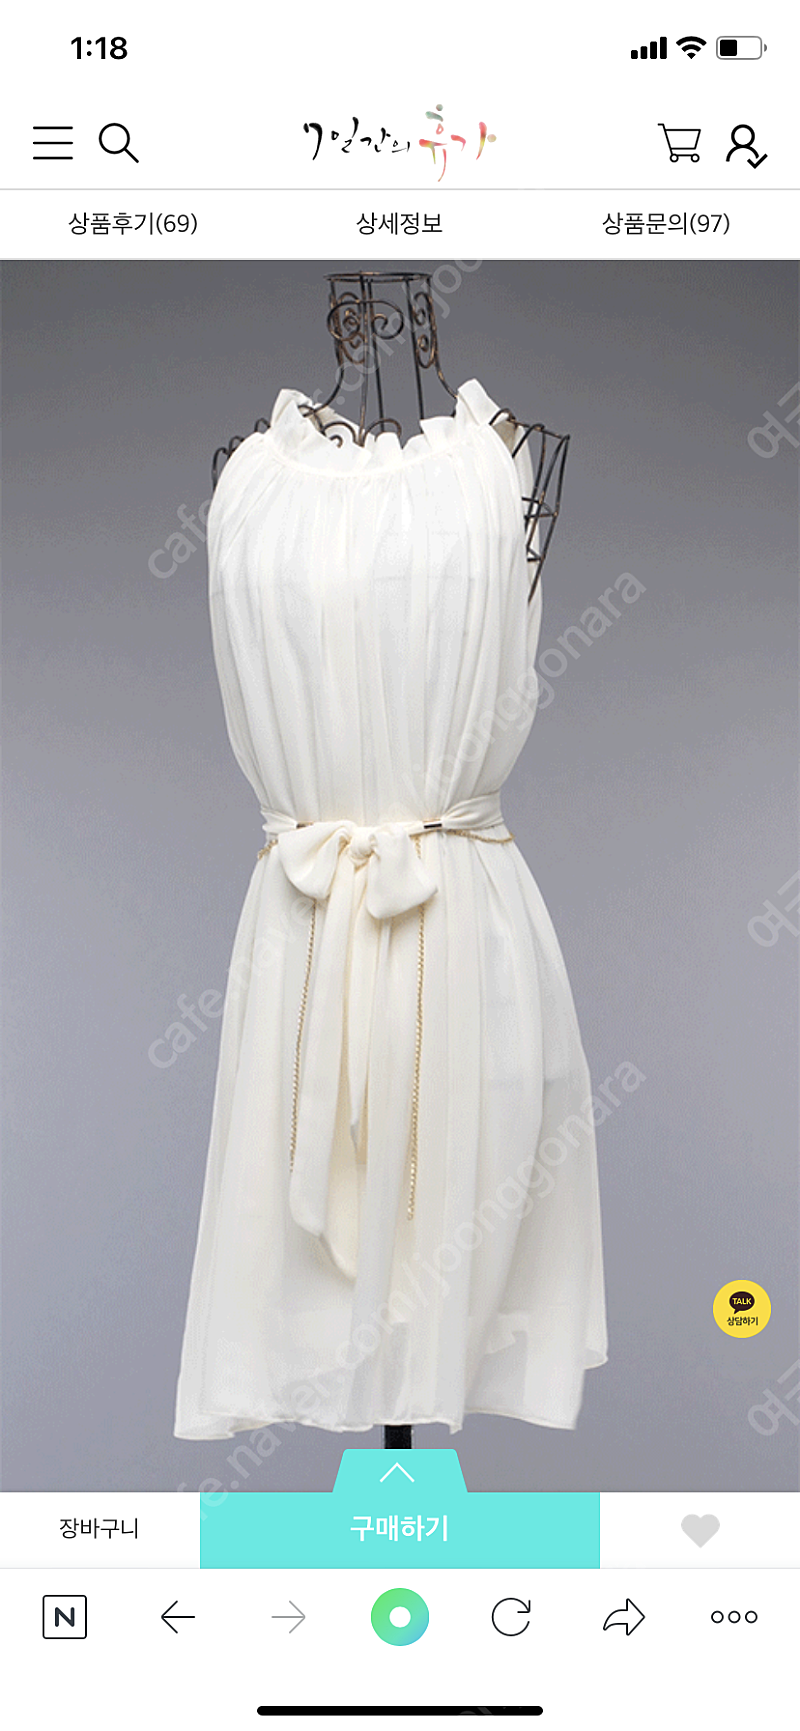 셀프웨딩드레스 스냅촬영 드레스 원피스